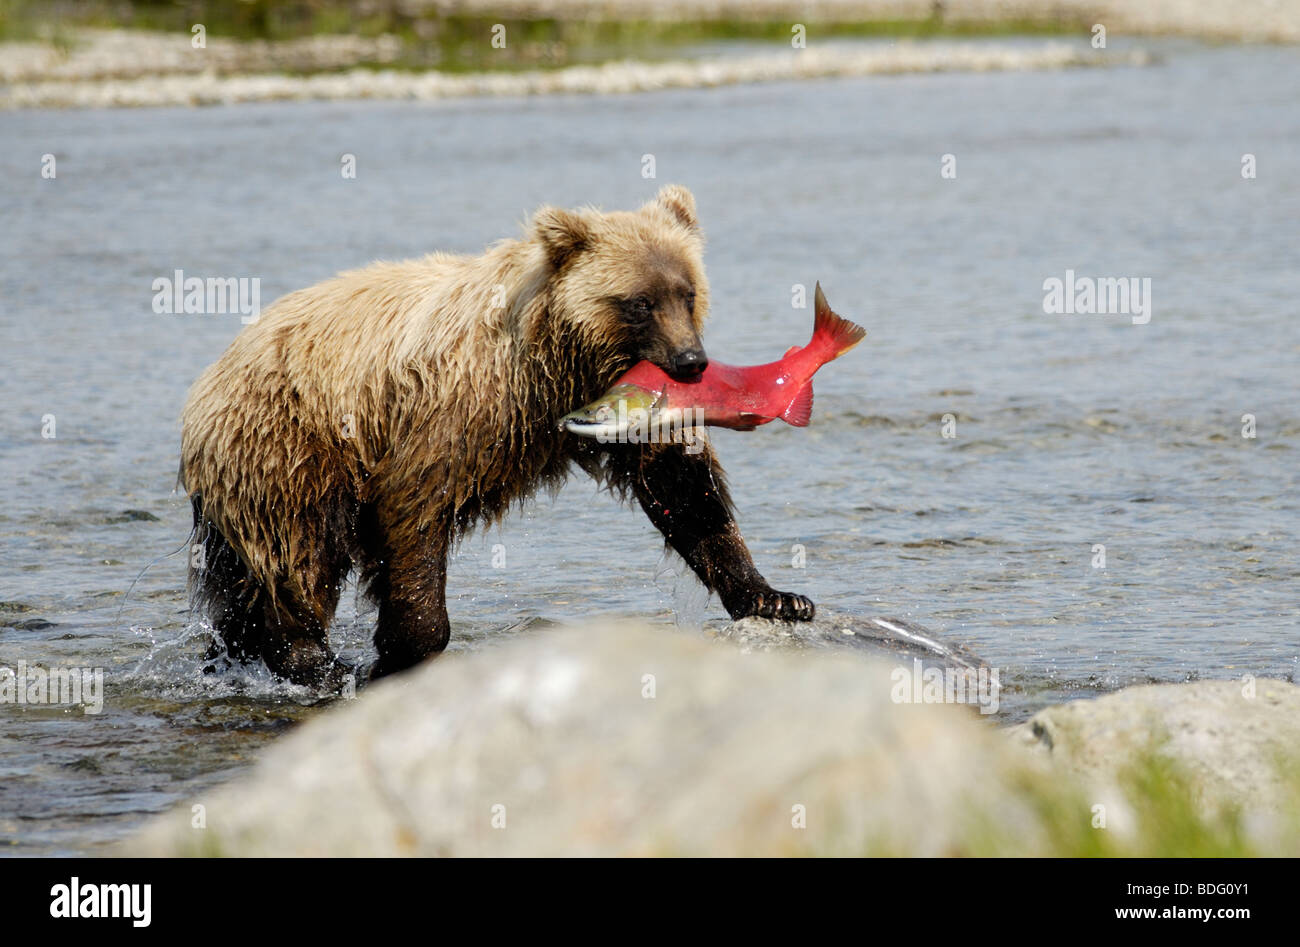 Grizzly Bär mit Fisch (Lachs) in Mund, Ursus arctos horribilis, Katmai National Park, Alaska Stockfoto